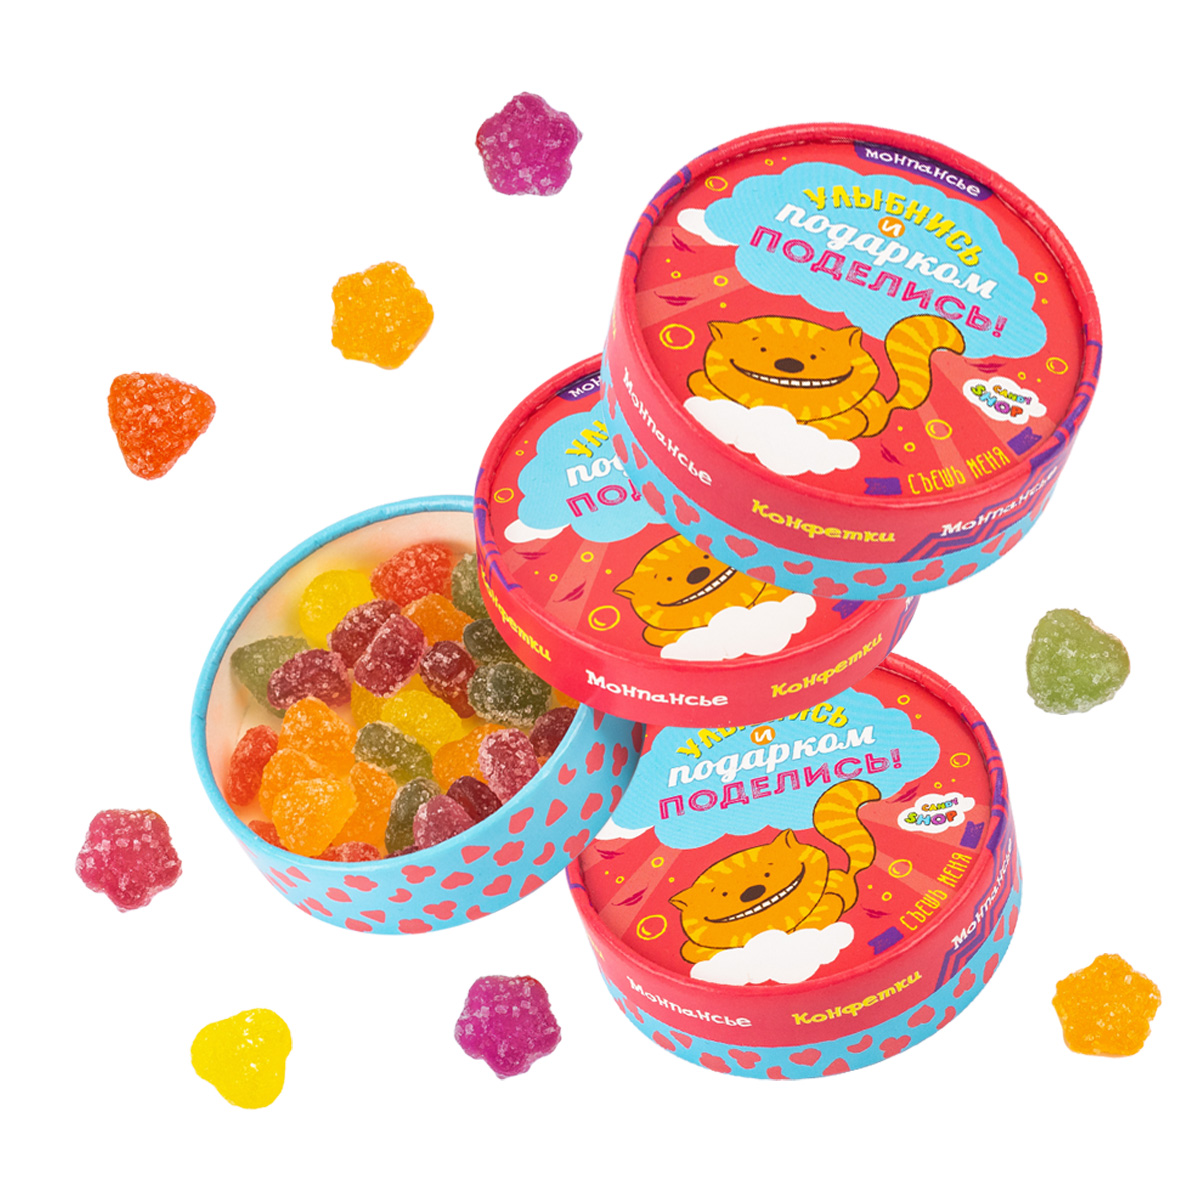 Монпансье фруктово-ягодное Candy Shop Улыбнись и поделись, 3 шт х 45 г